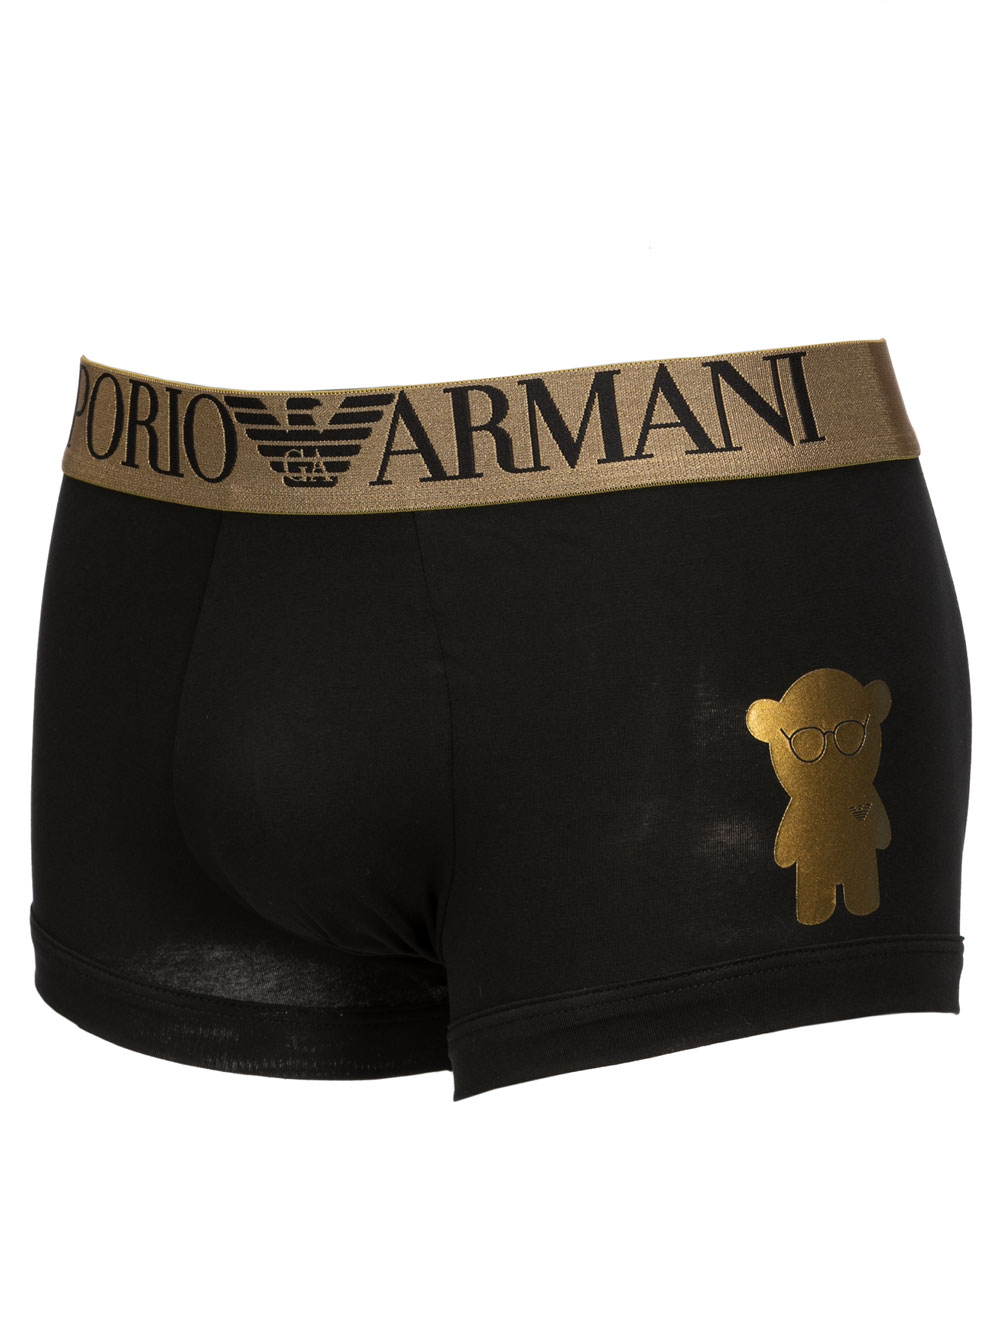 Boxer Uomo Emporio Armani limited edition Nero stampa Orso Oro | Albos  Underwear - Shop Online Intimo